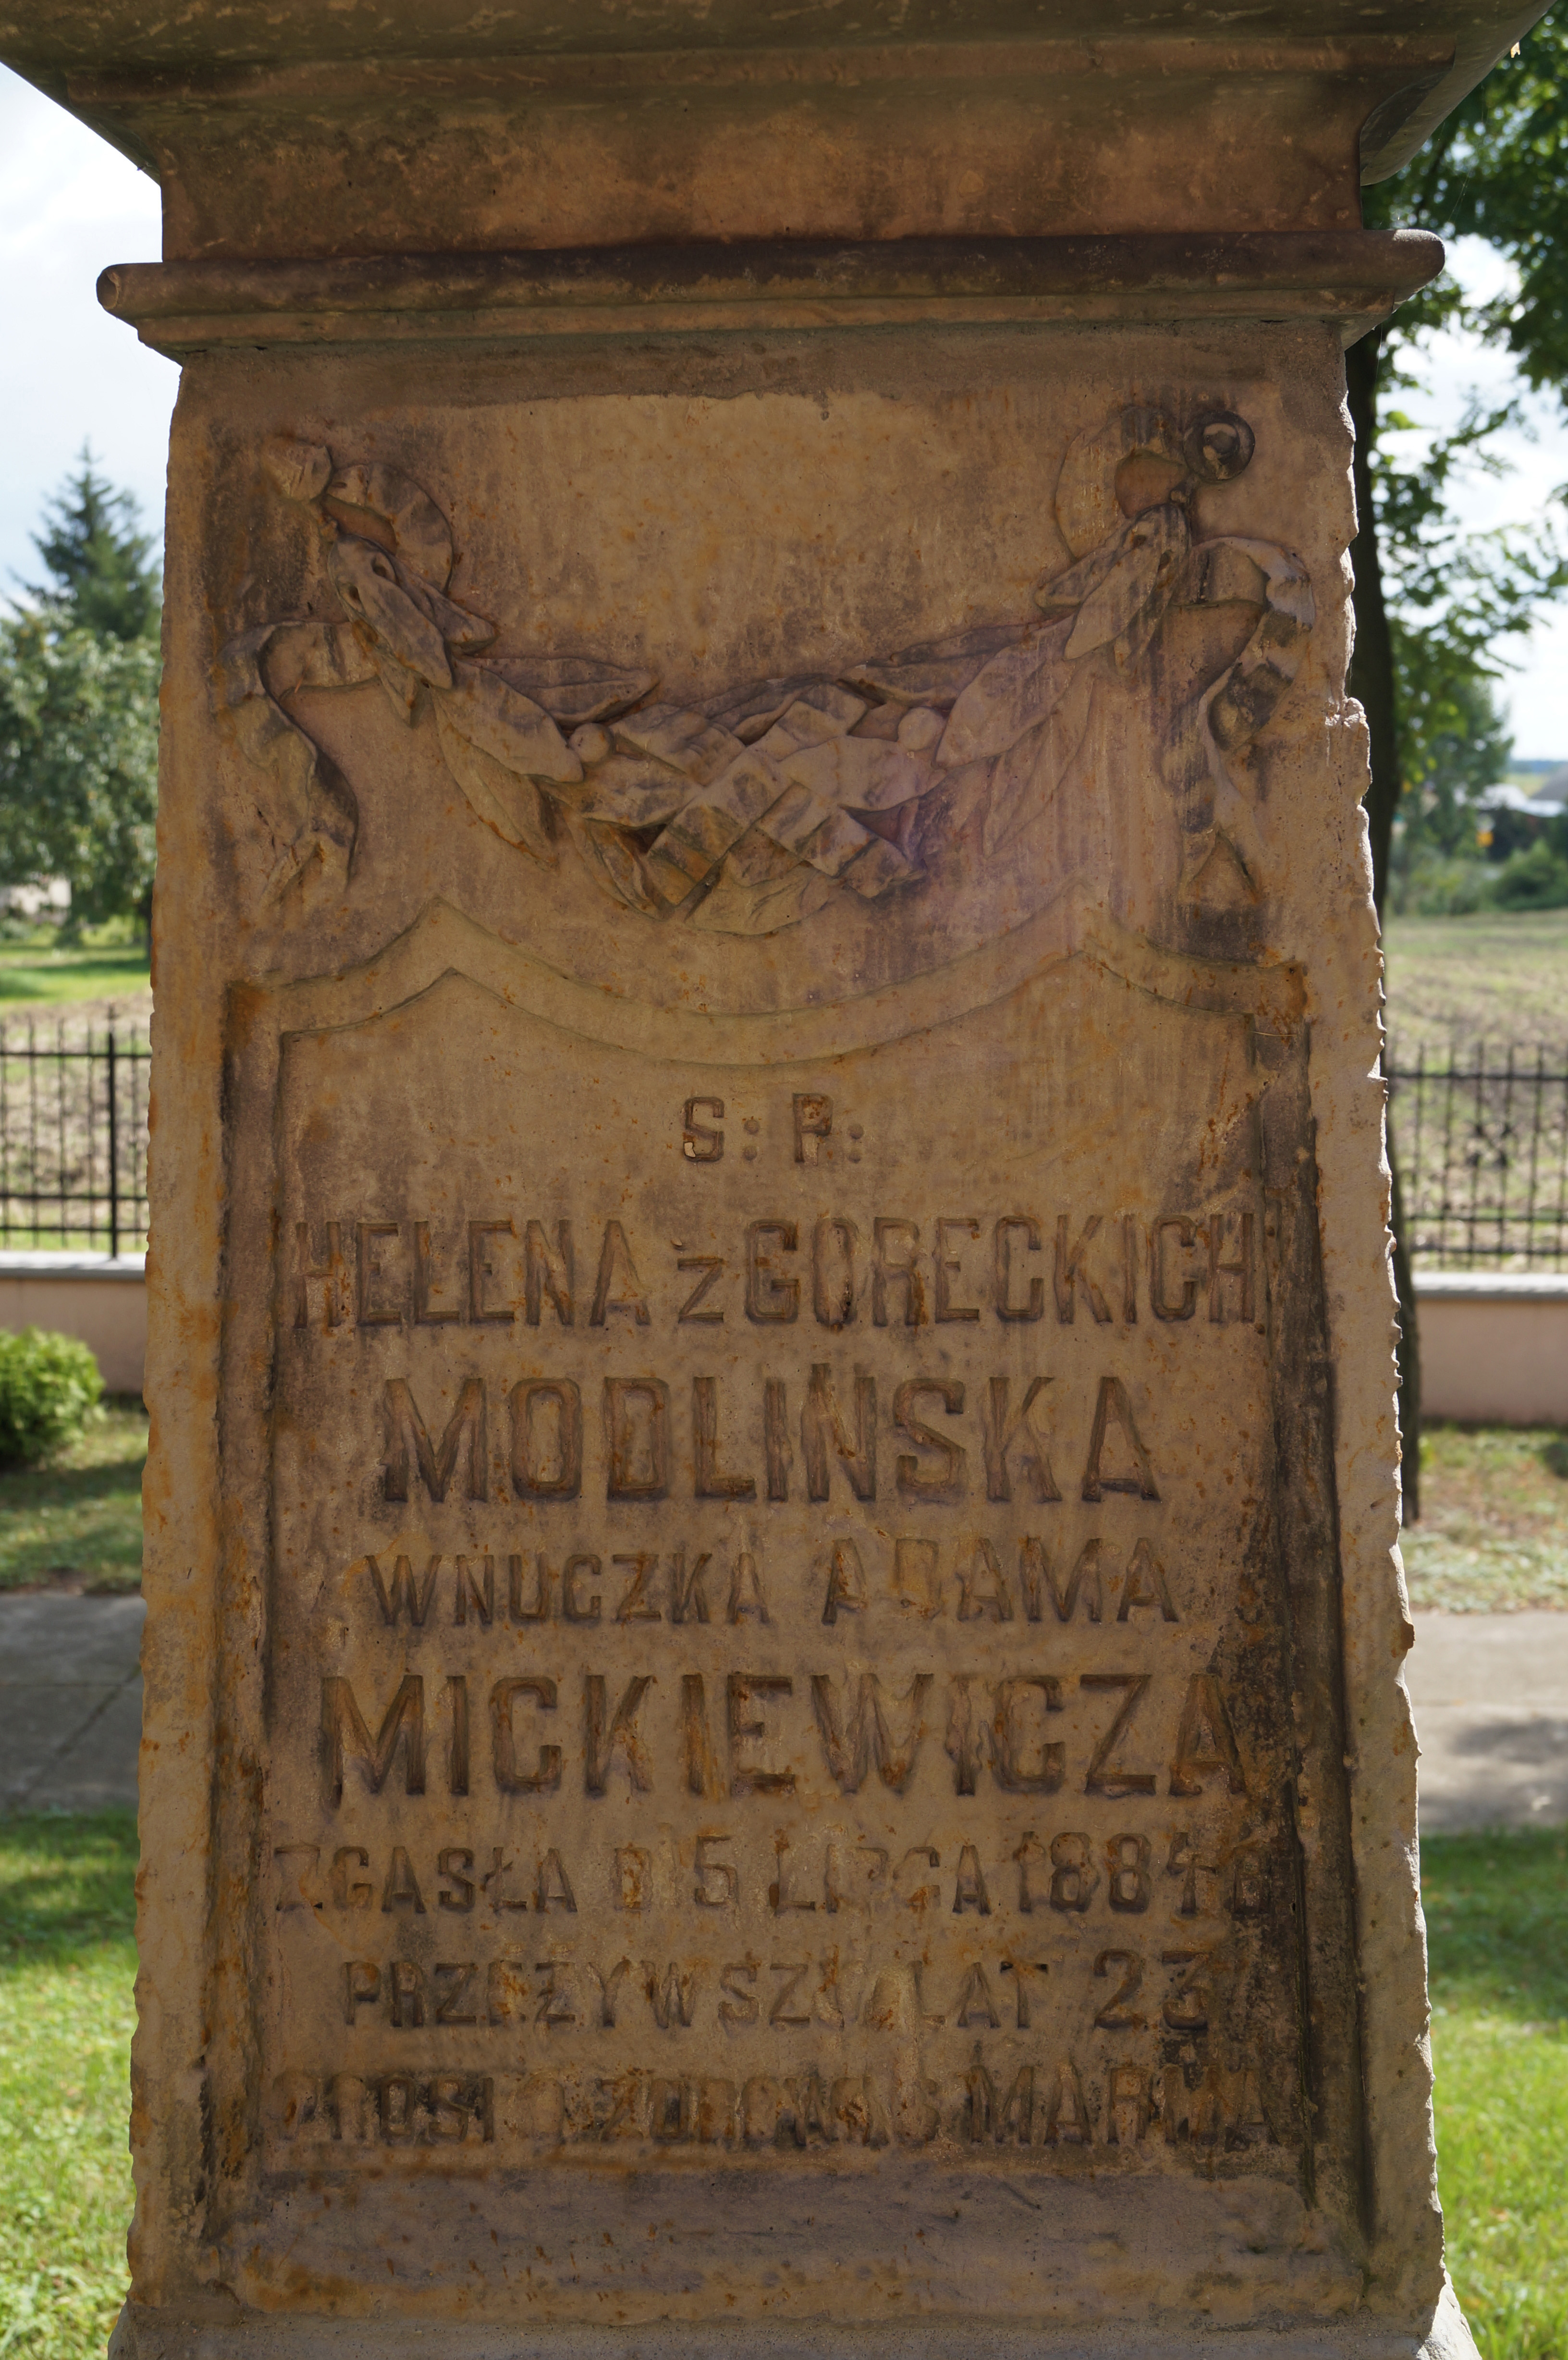 Nagrobek Heleny z Goreckich Modlińskiej, wnuczki Adama Mickiewicza, na cmentarzu w Krzywosądzy. Fot. Katarzyna Podczaska